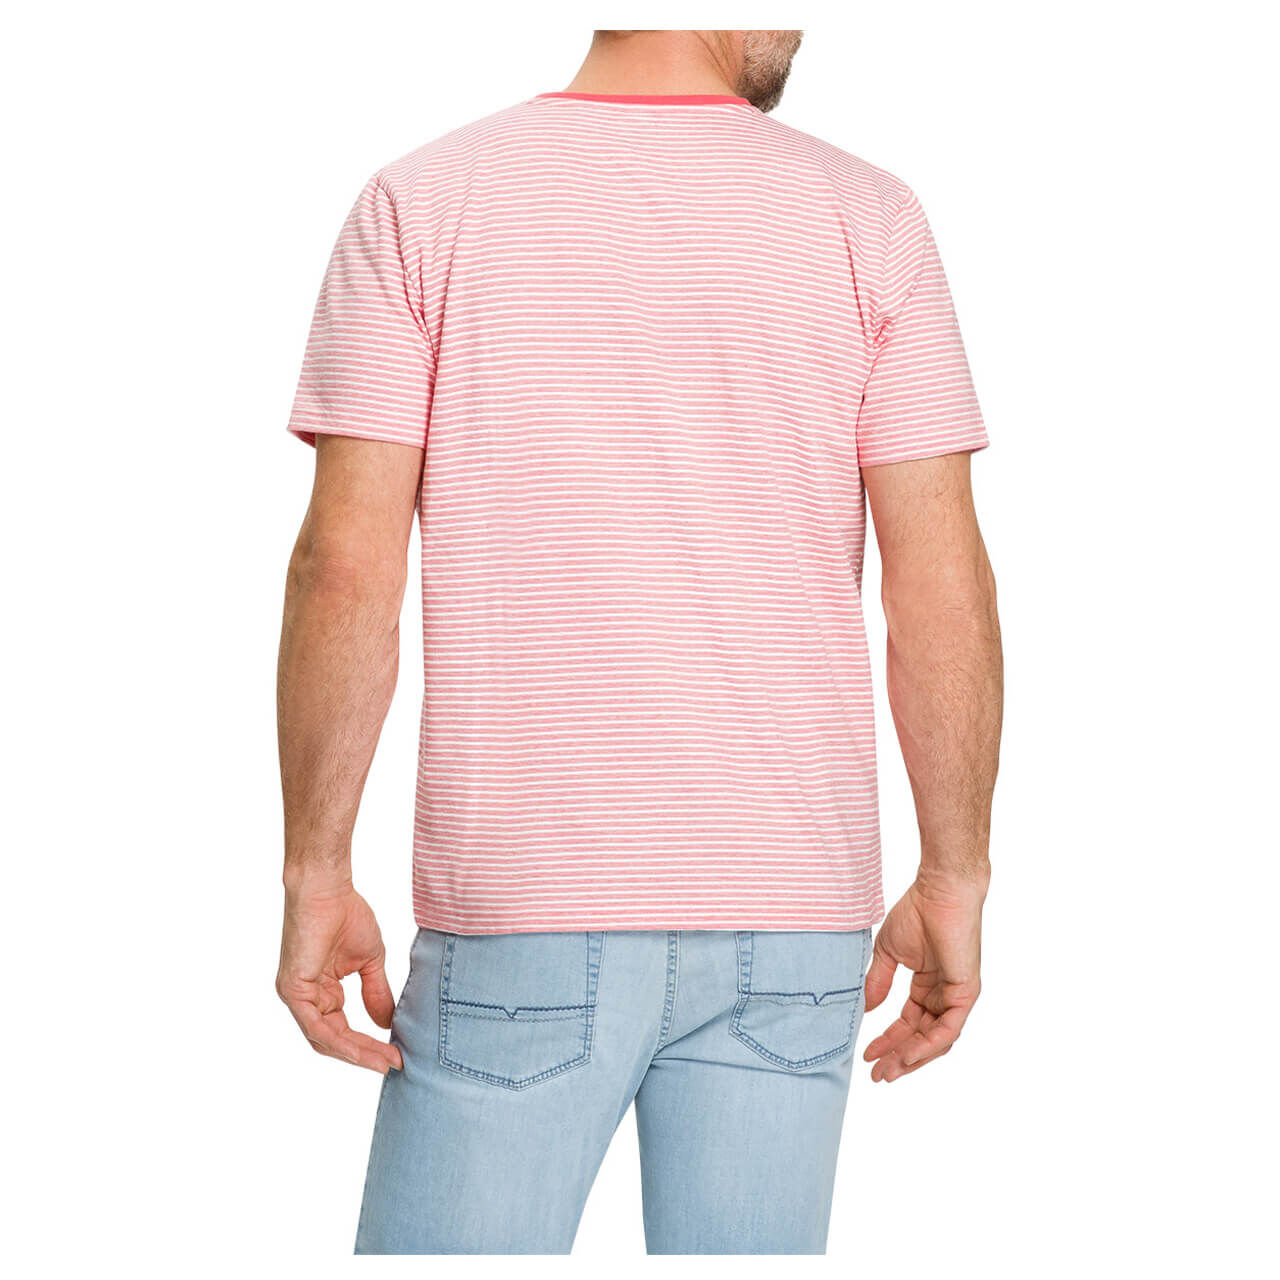 Pioneer T-Shirt für Herren in Hellrot gestreift, FarbNr.: 4706